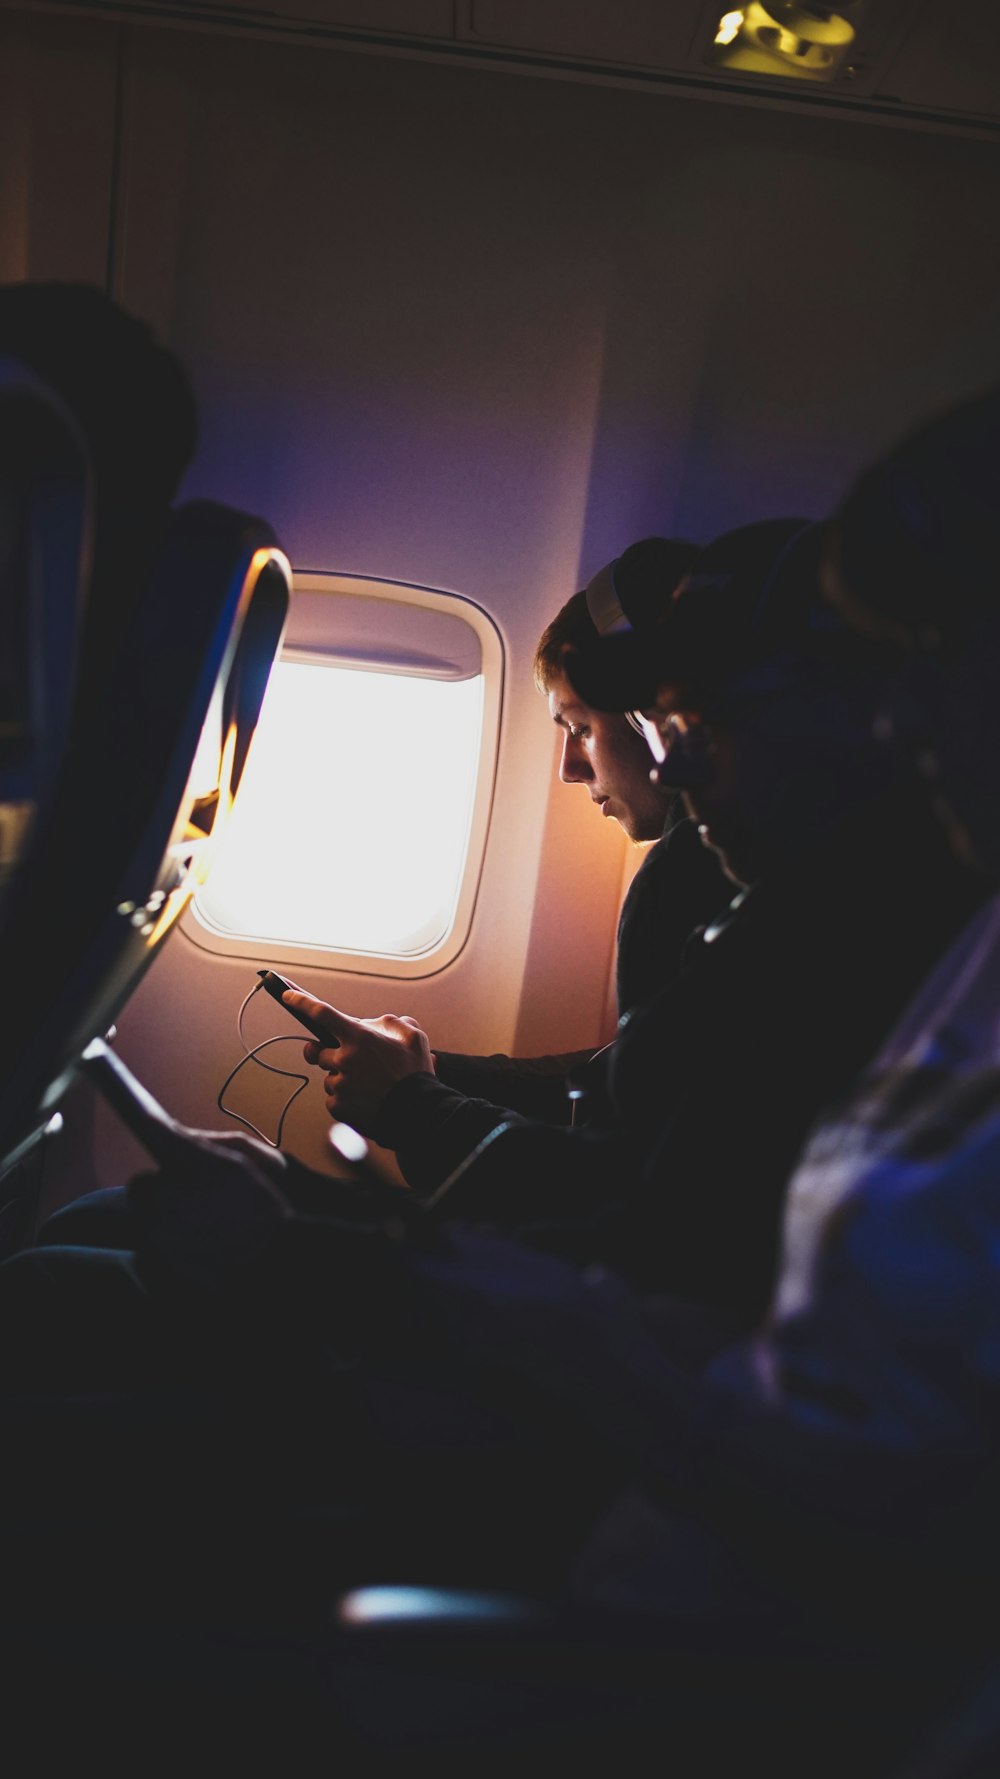 飛行機の中で音楽を聴く3人の写真